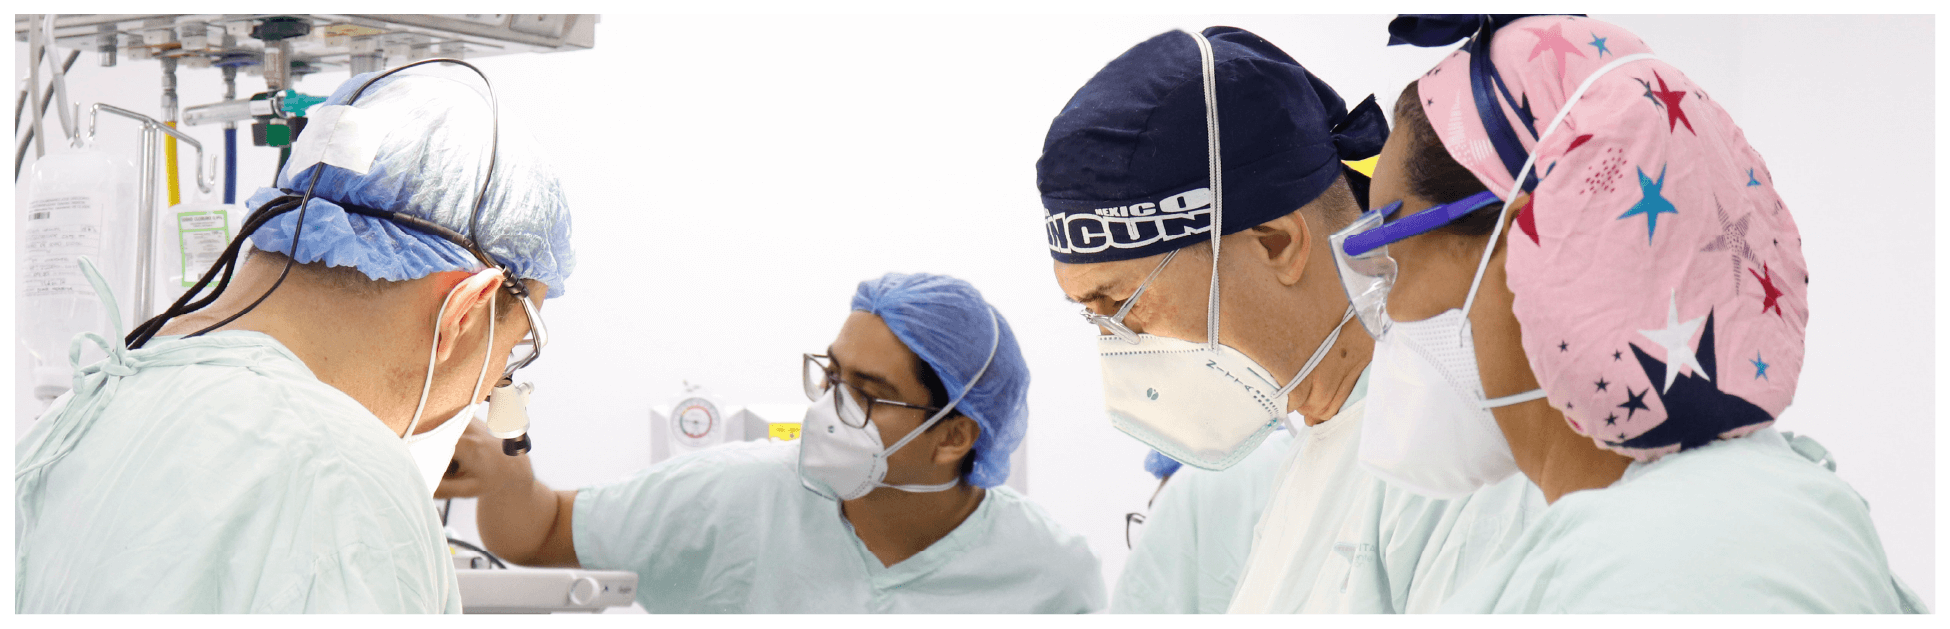 Grupo de doctores realizando una intervención quirúrgica